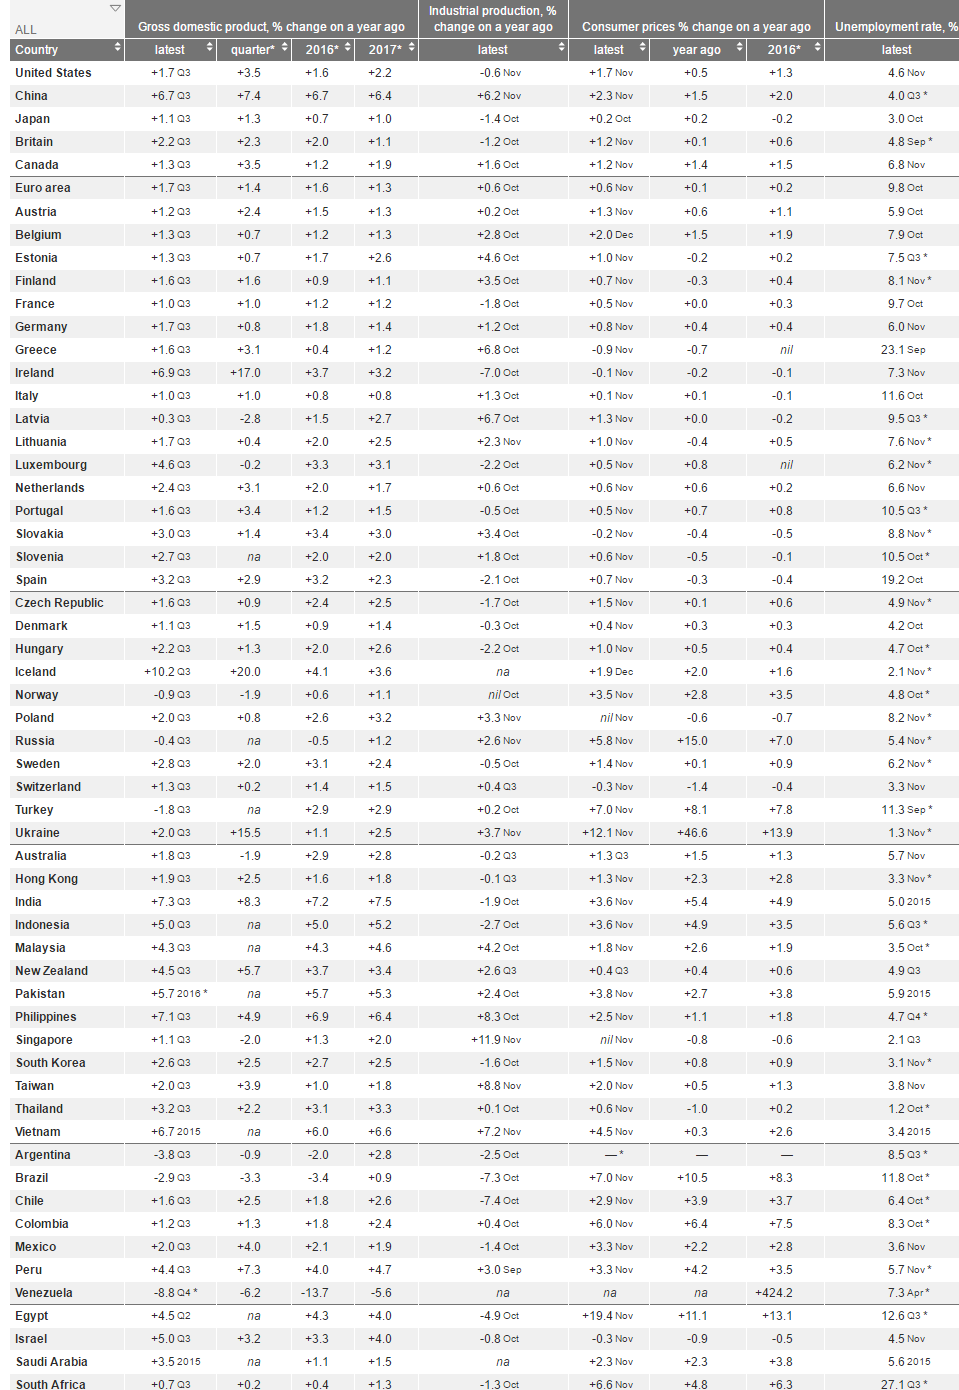 نرخ رشد منفی برزیل/ بهره بانکی سوئیس همچنان منفی/ ایران در بین 6 کشور دنیا با تورم بالا